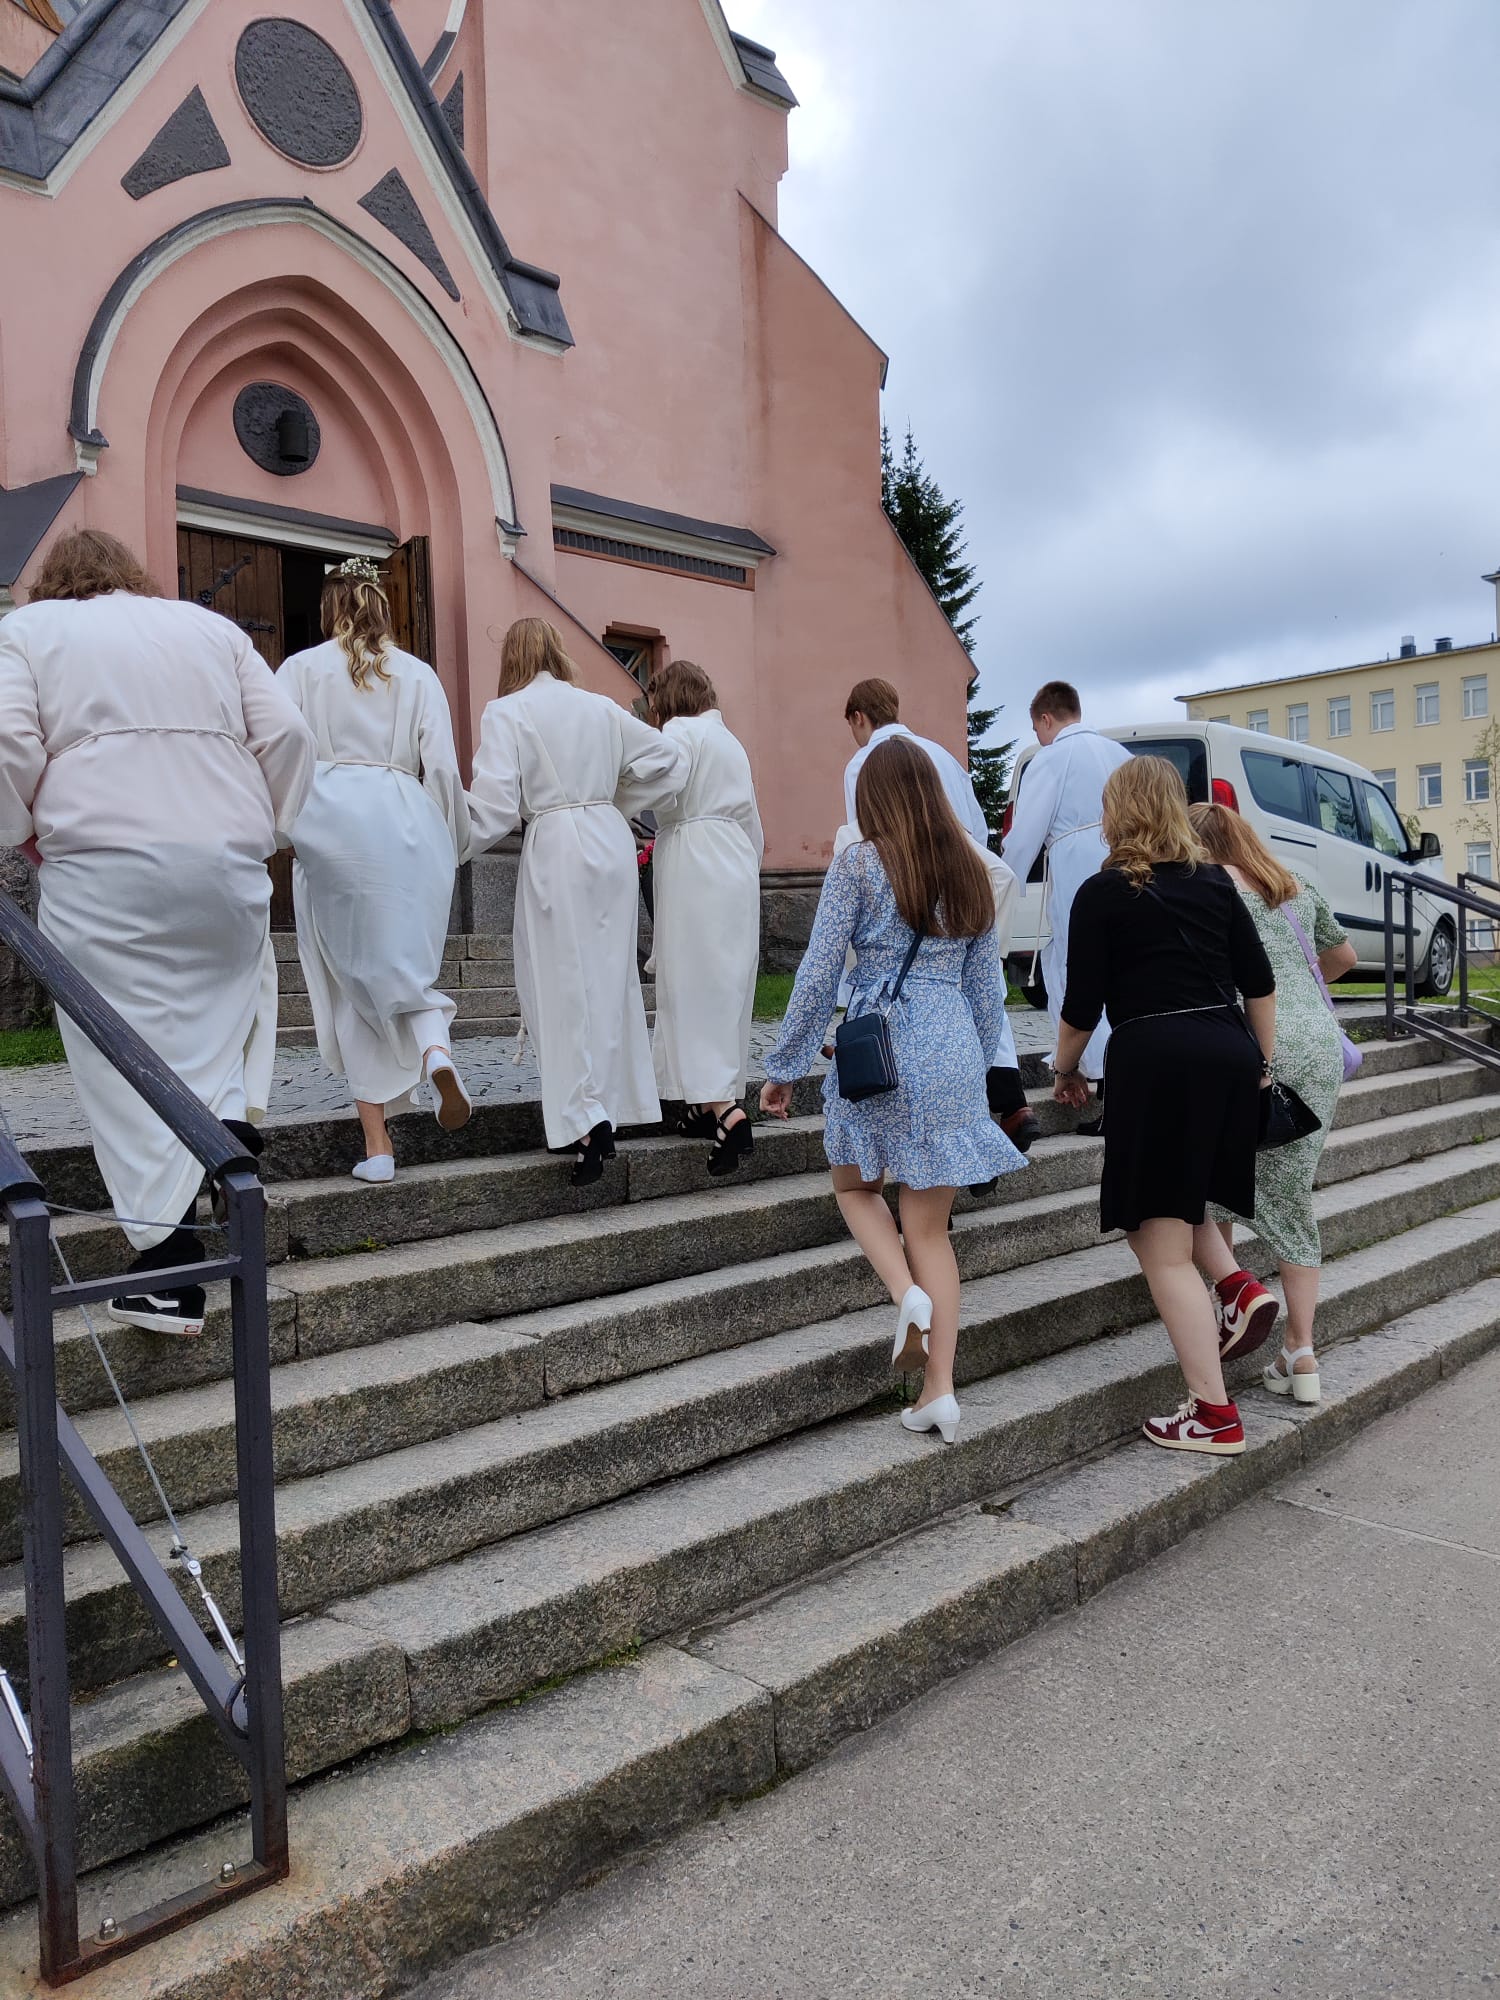 Konfirmoitavat nuoret ovat matkalla kohti kirkkoa. Nousevat portaita kuvassa.